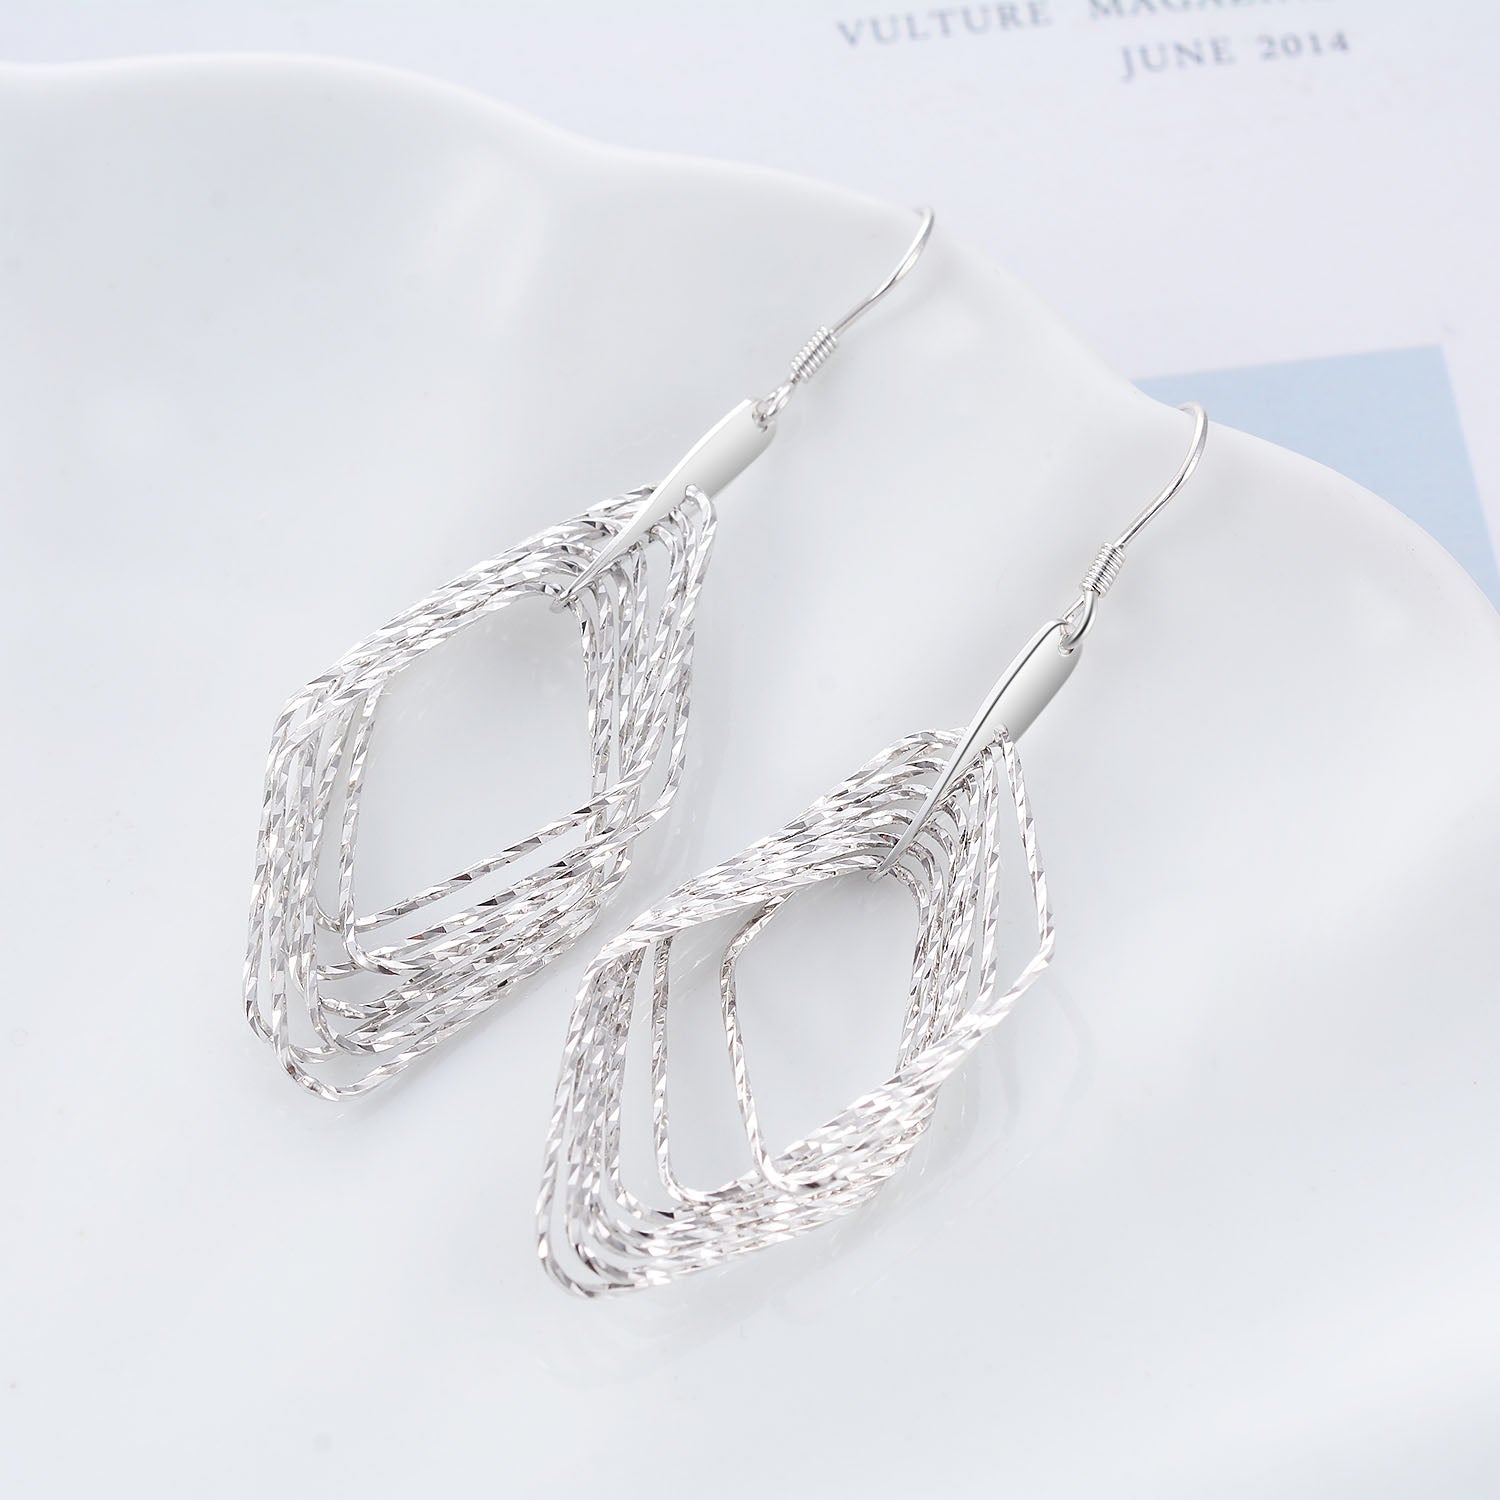 Geometric Rhombus Drop Pendant Earrings For Elegant Women Jewelry